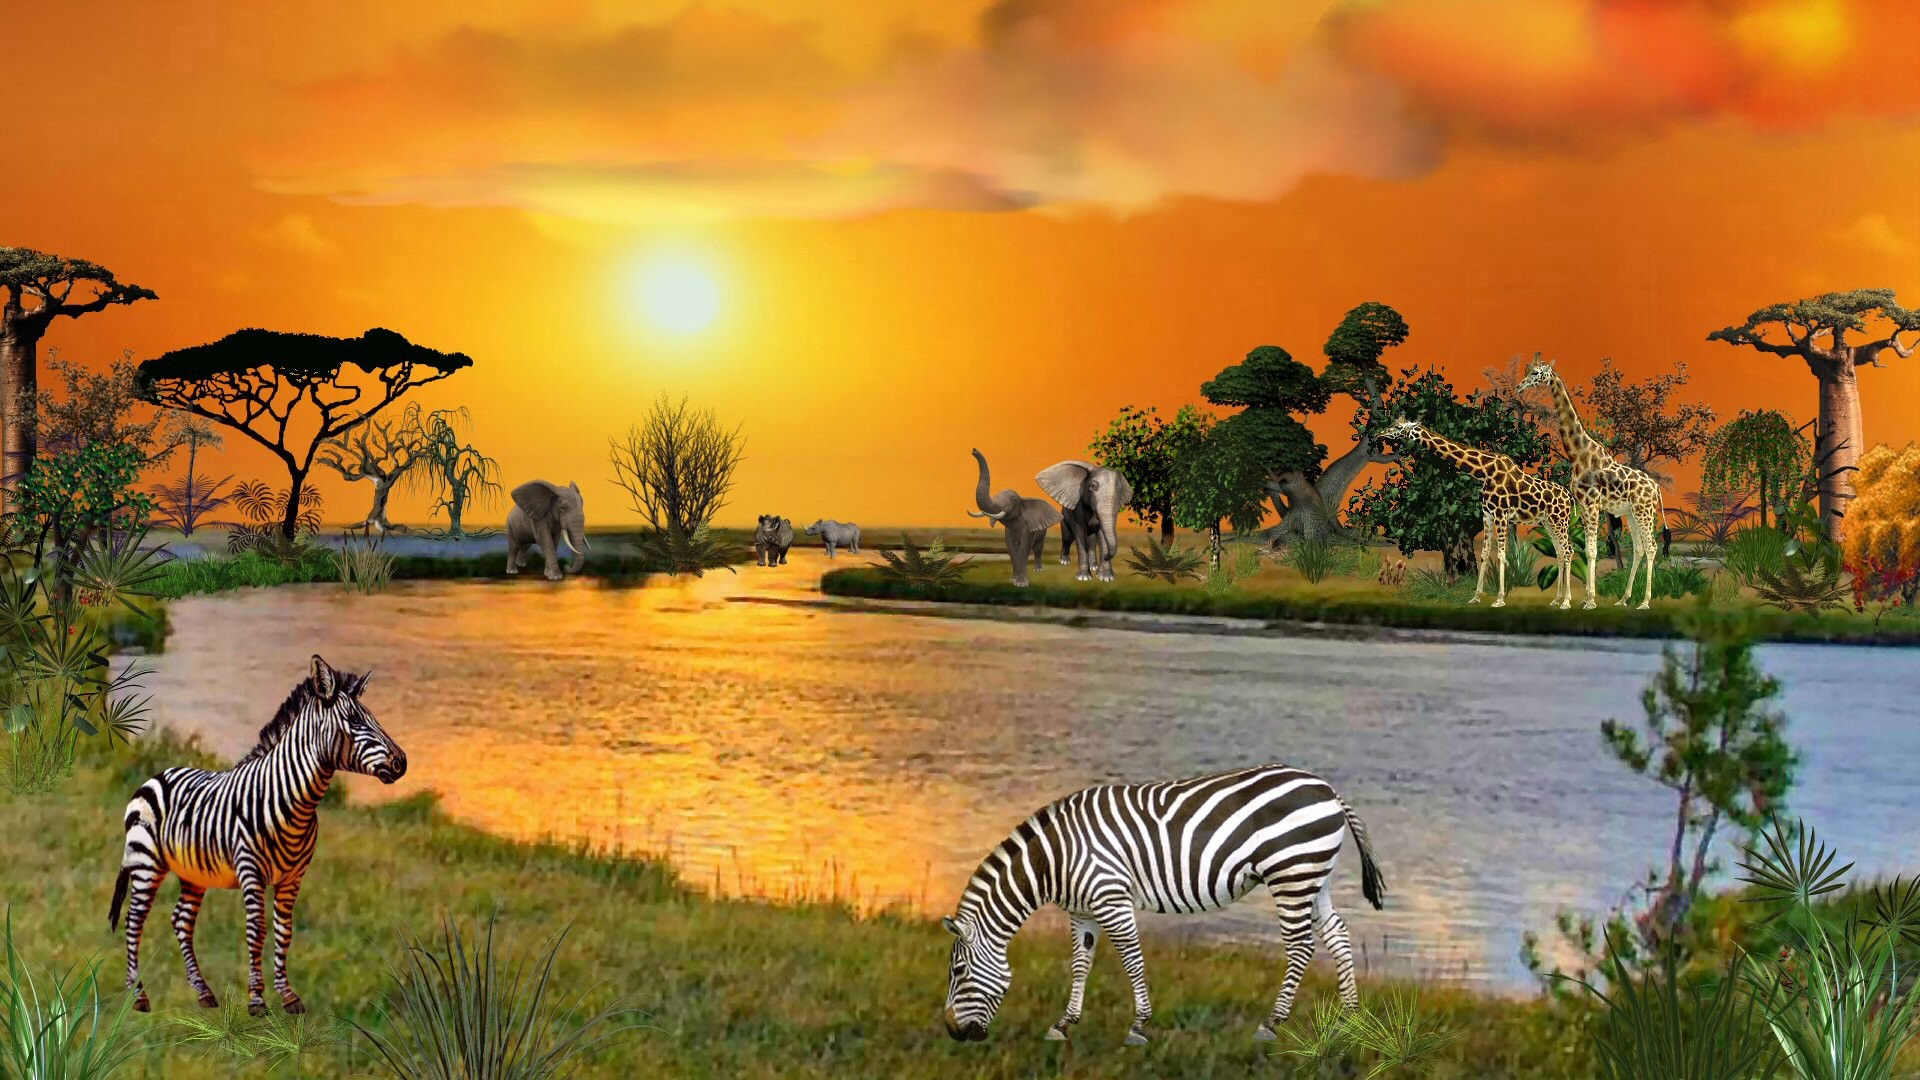 sunsets-river-african-animals-zebra-rivers-elephants-sunset-giraffes-nature-africa-hd-iphone-wallpaper.jpg